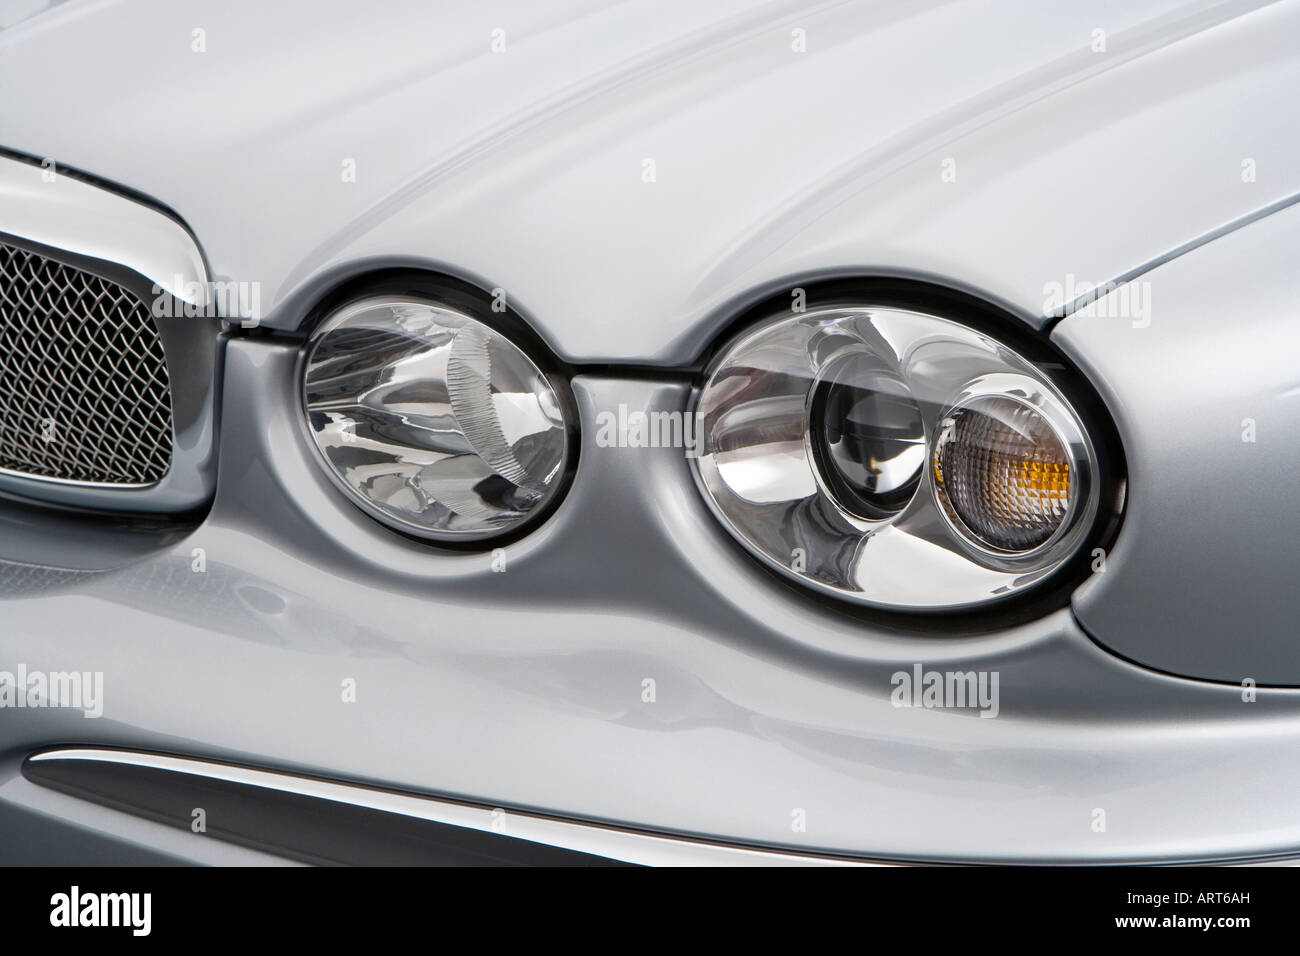 2008-Jaguar X-Type in Silber - Scheinwerfer Stockfotografie - Alamy